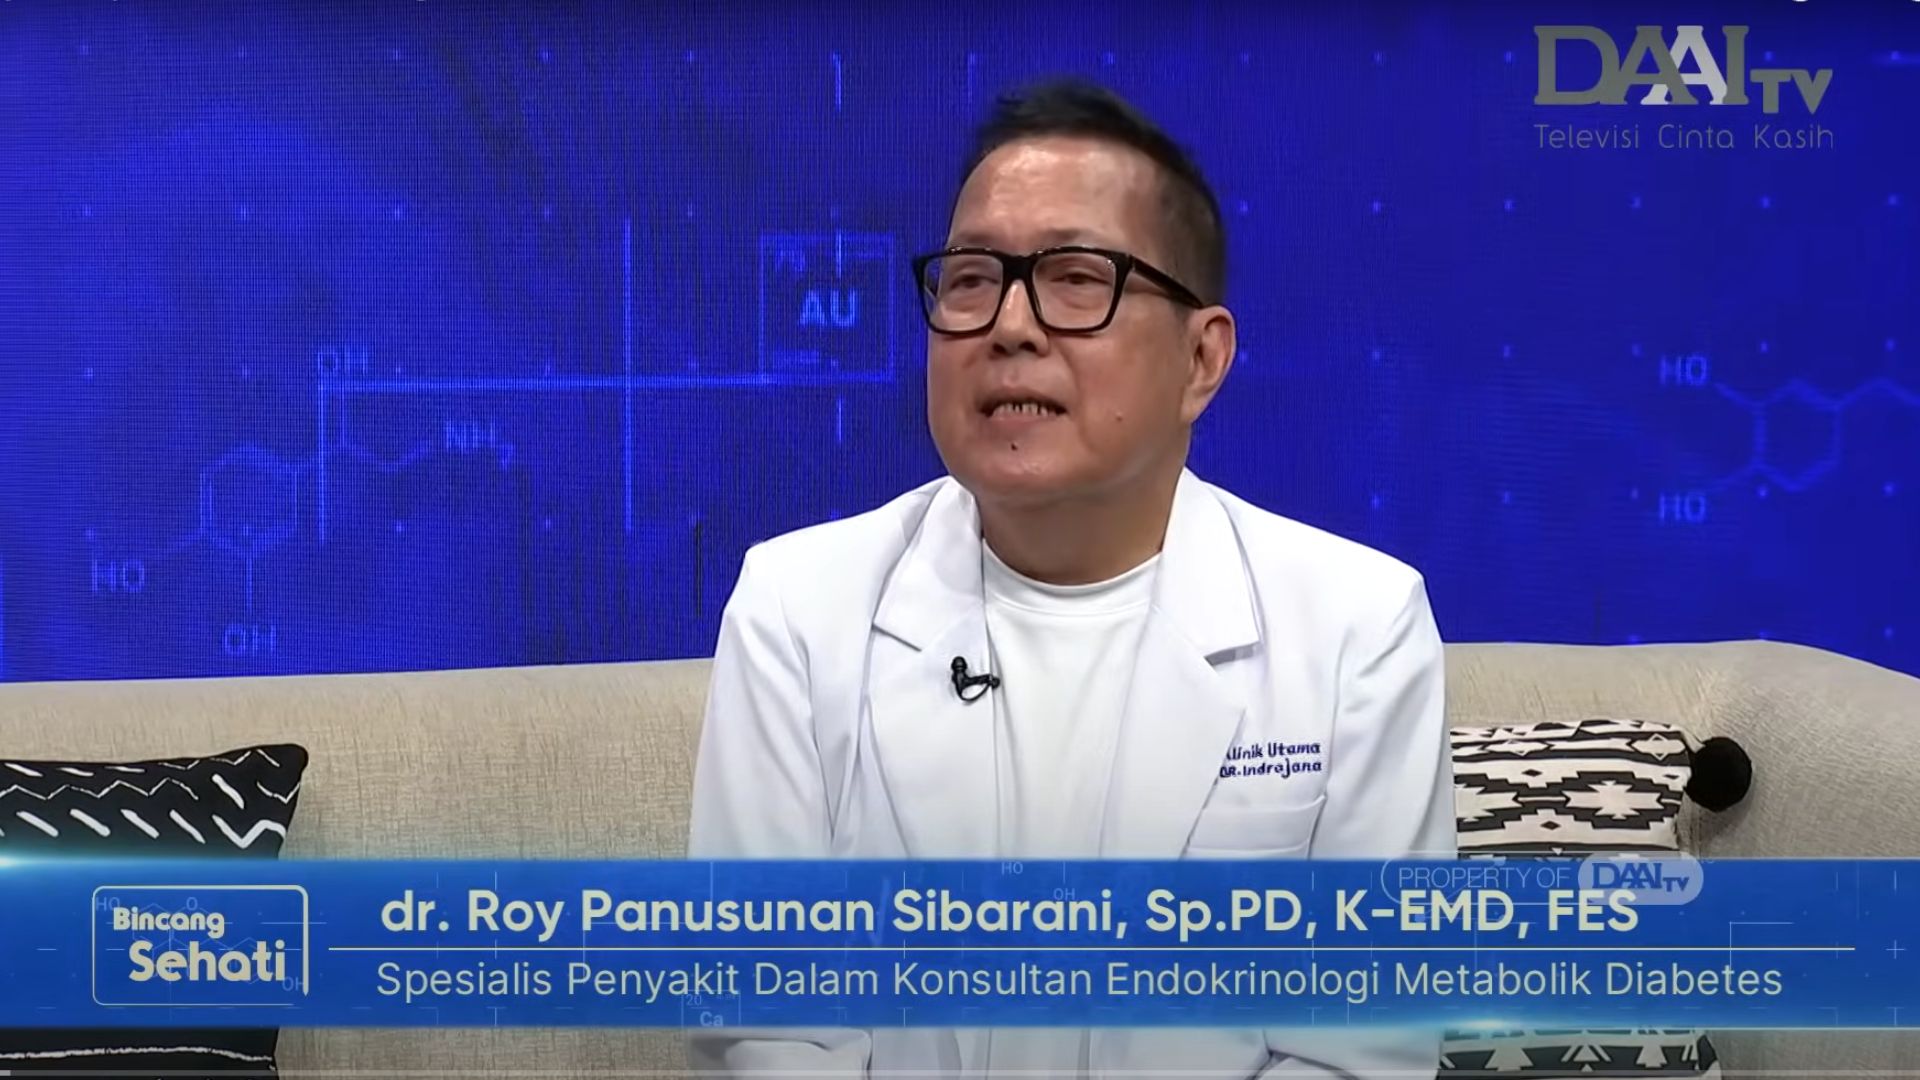 Bincang Sehati DAAI TV - dr. Roy Panusunan, Sp.PD, K-EMD, FES - Klinik Utama DR Indrajana (1)